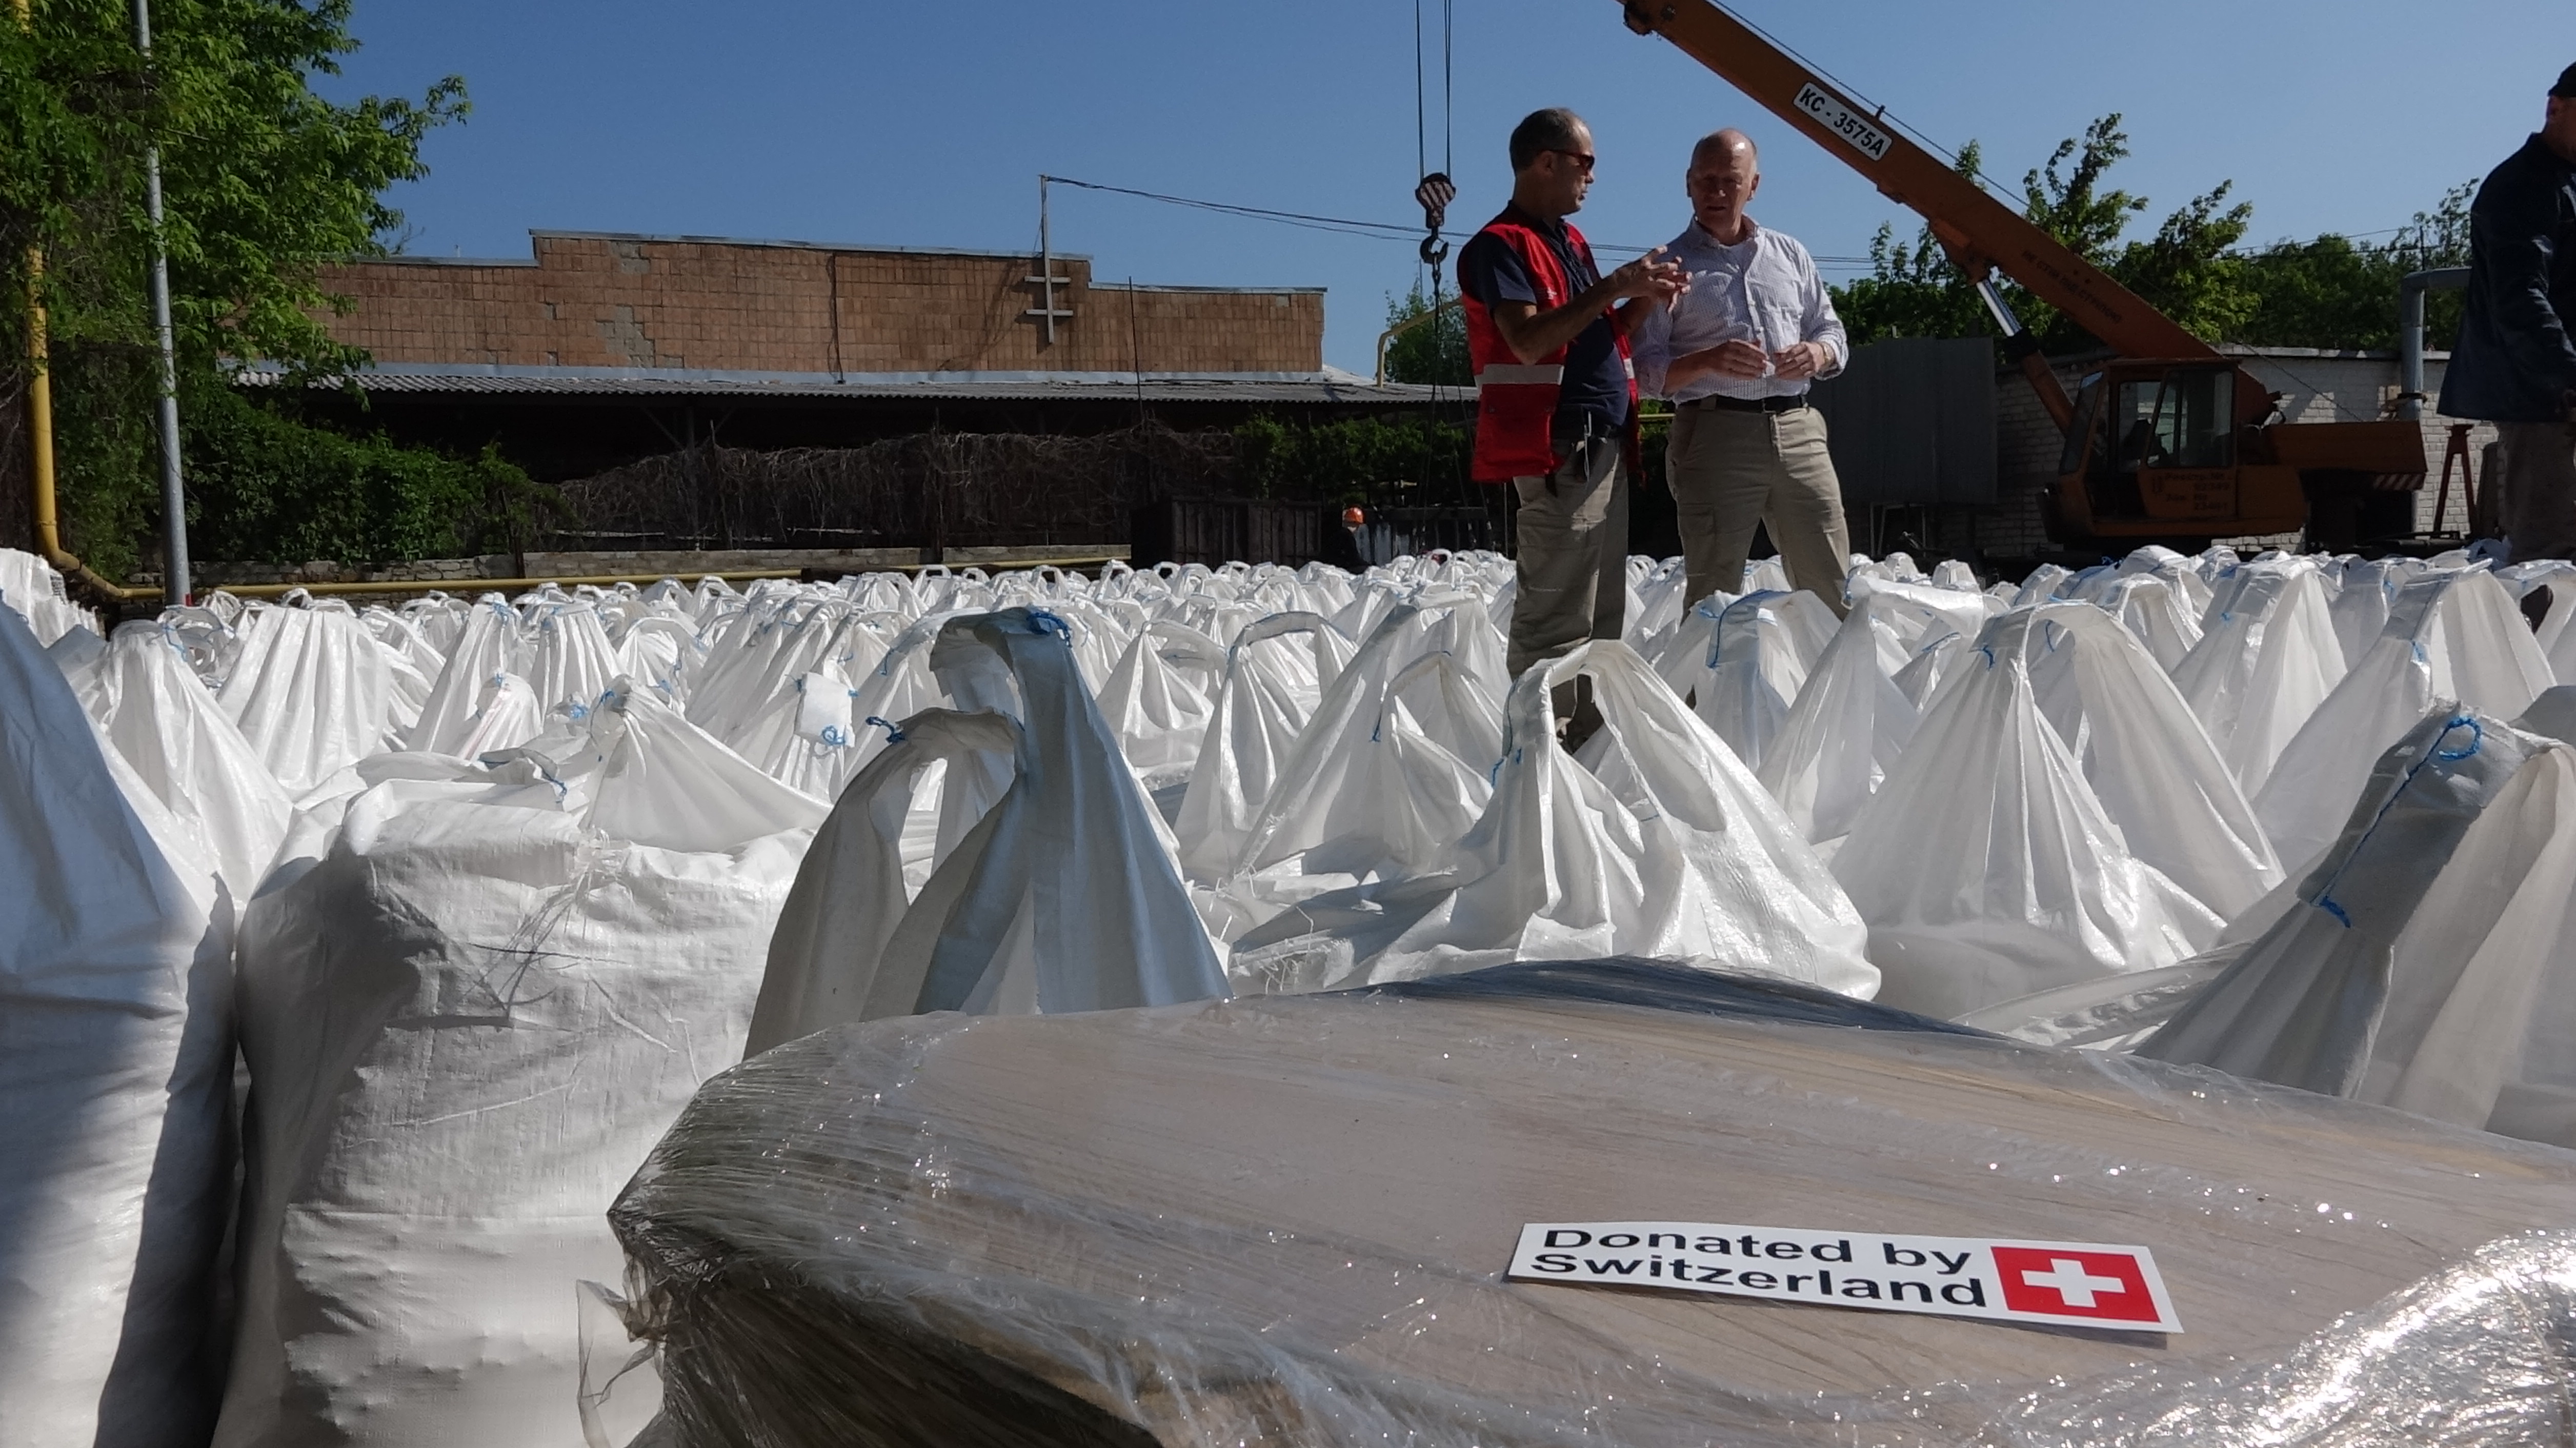 Due esperti svizzeri in mezzo a un centinaio di sacchi di prodotti chimici ammassati a terra nell'area adiacente a una stazione di distribuzione idrica.   